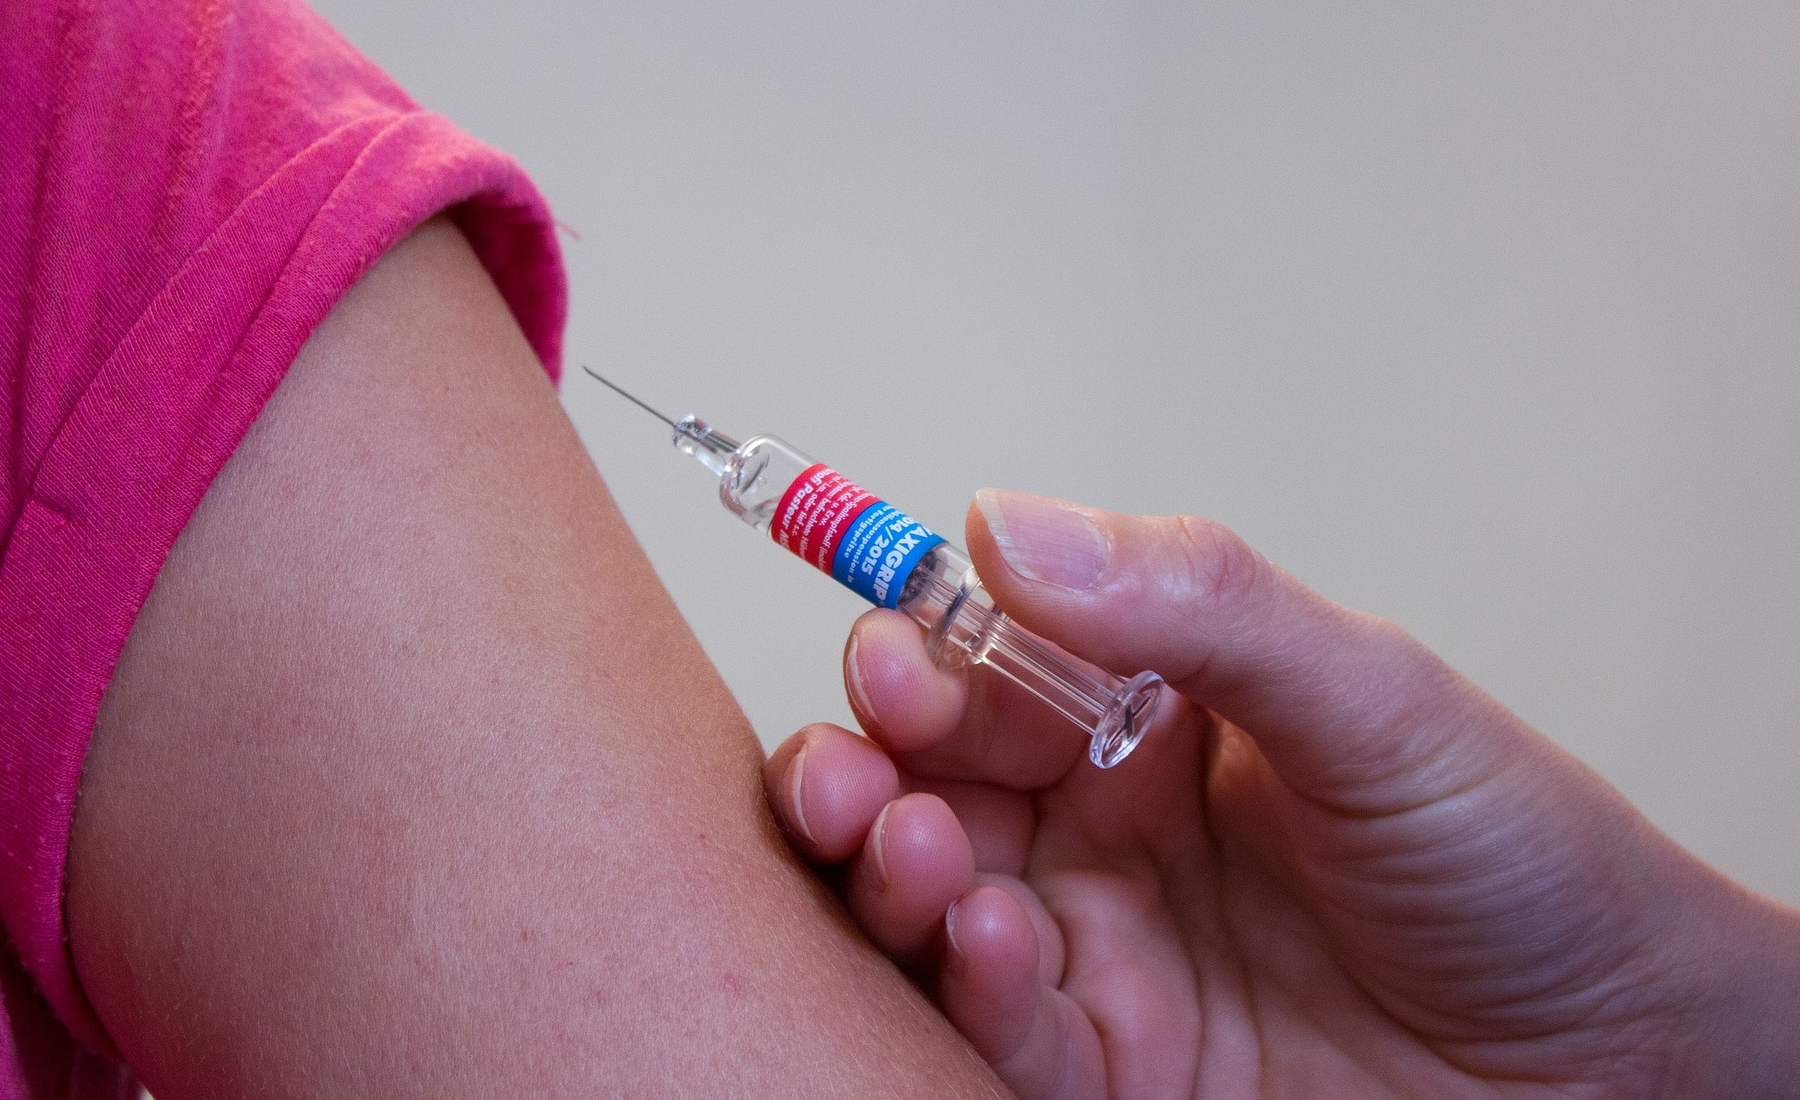 szczepionka-przeciw-polio-kiedy-nalezy-nia-szczepic